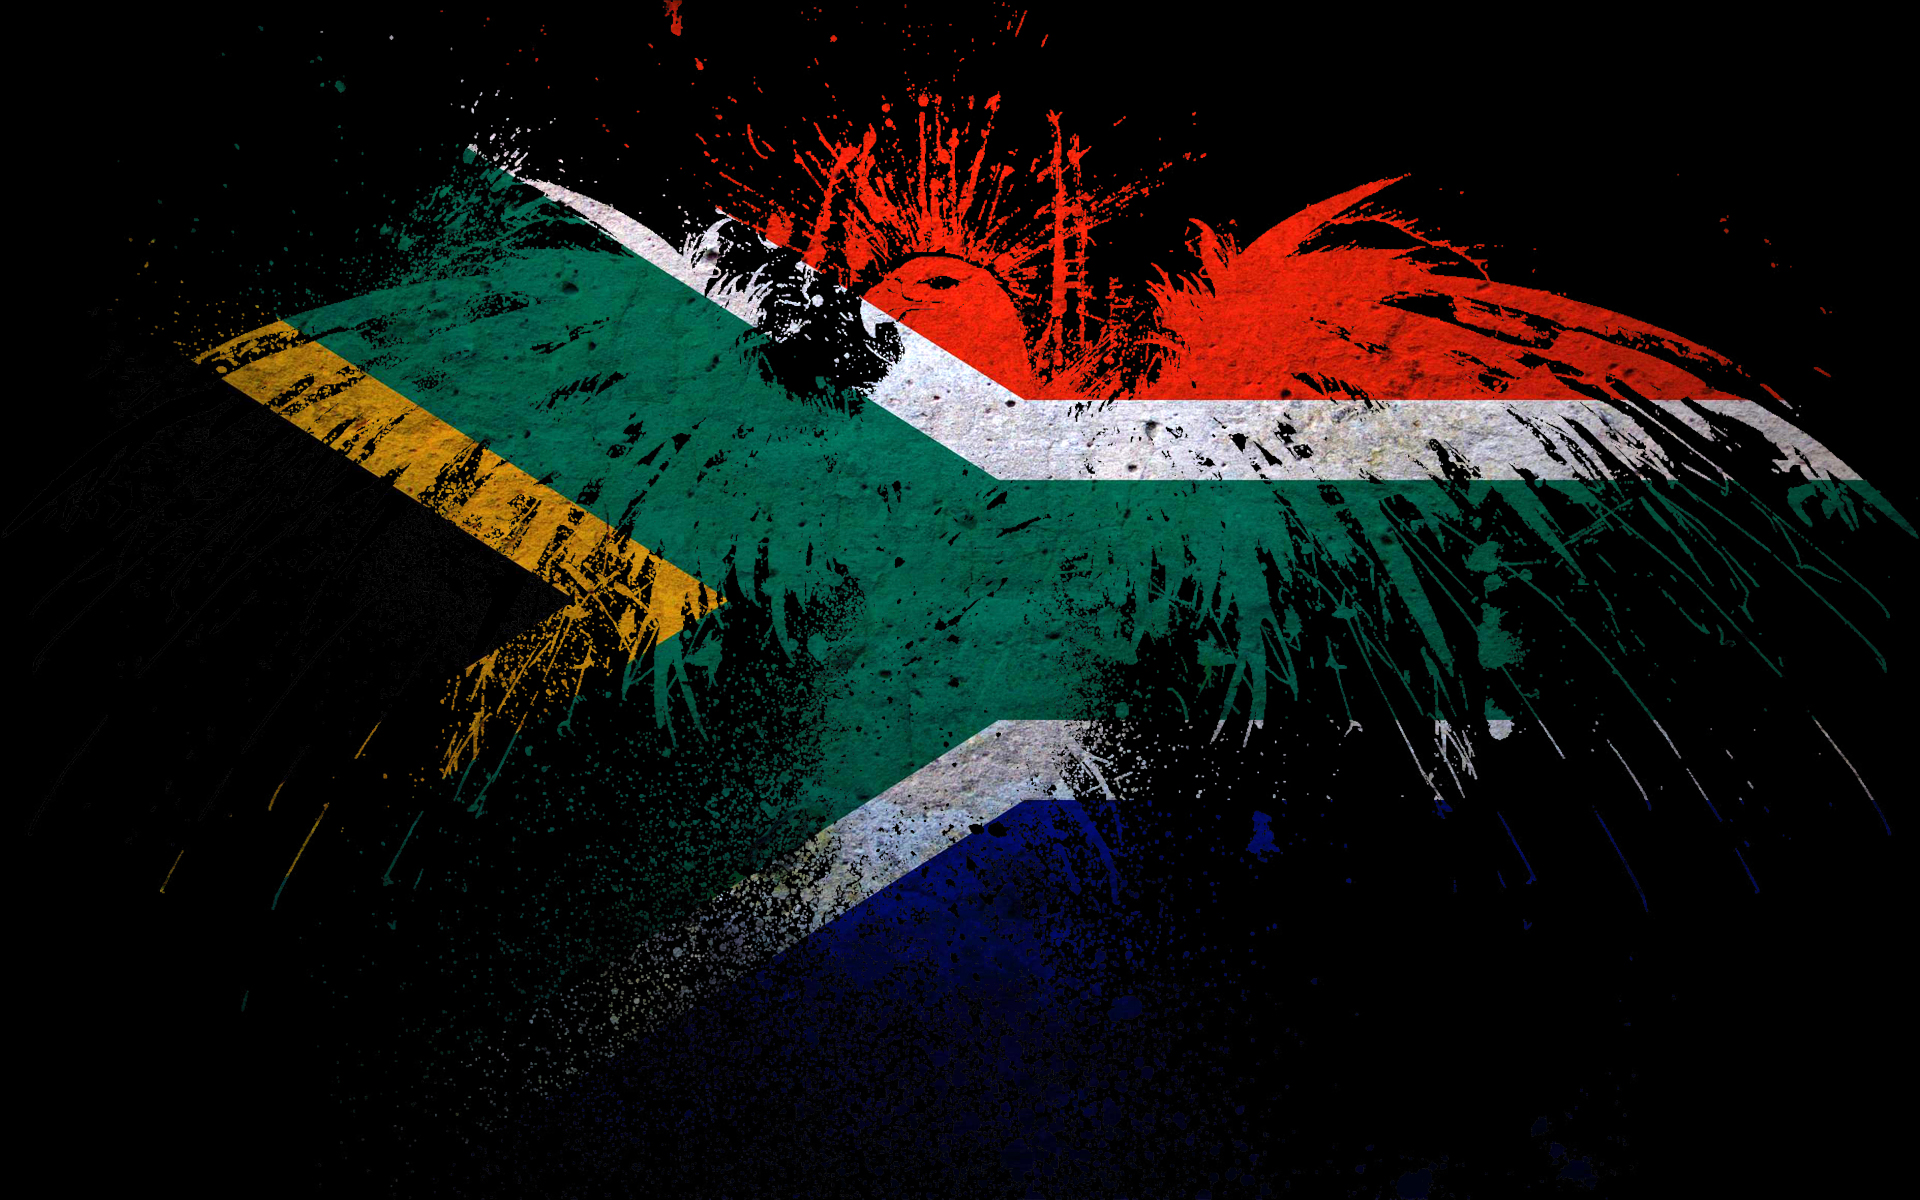 орлы, флаги, Южная Африка - обои на рабочий стол